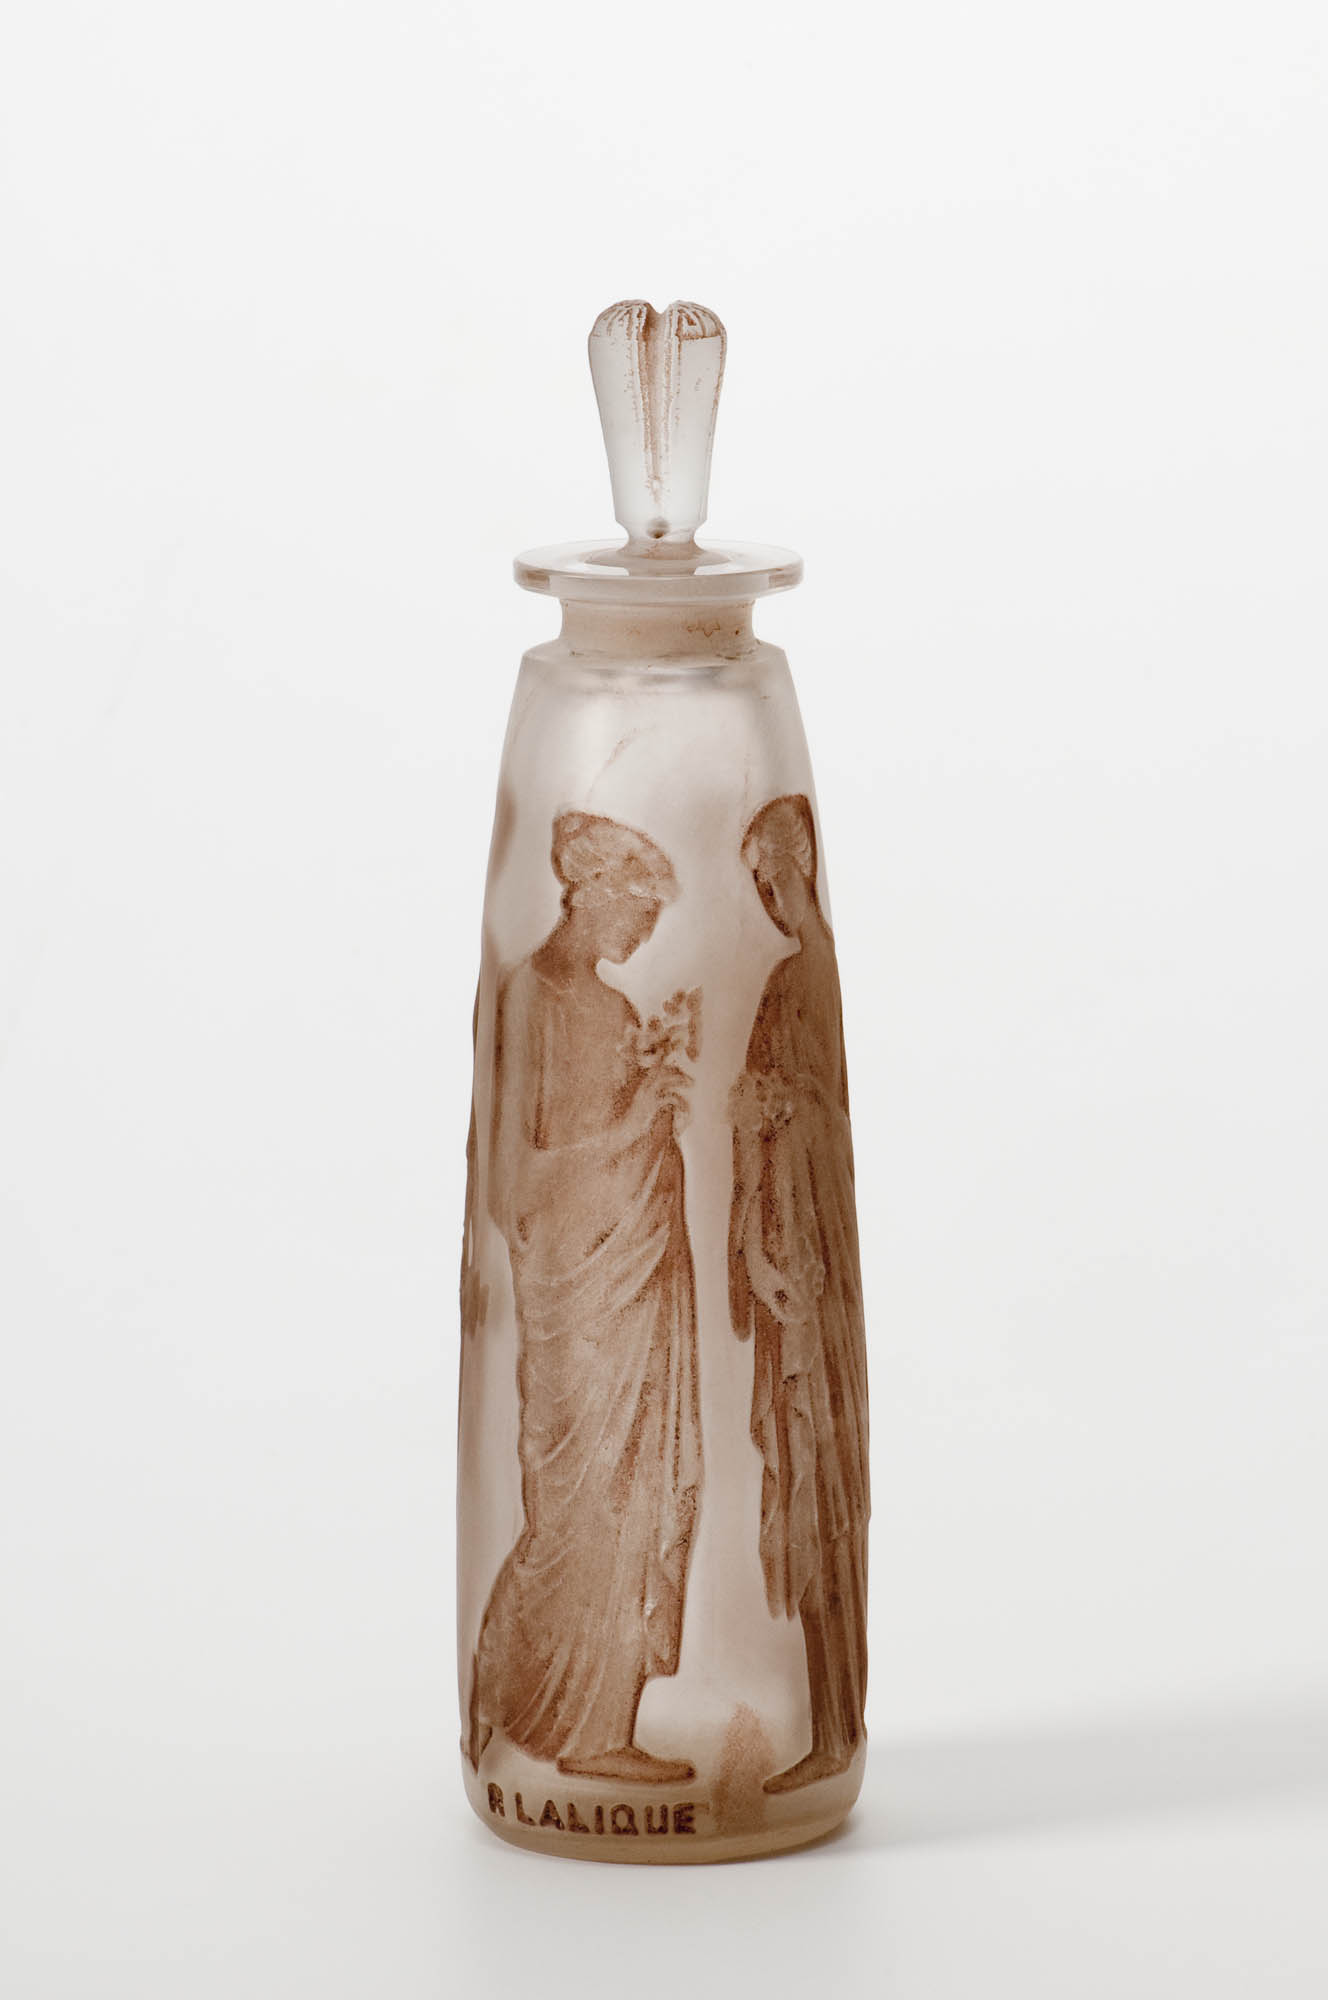 Modell Nr. 502: Serpent René Lalique Perfume bottle